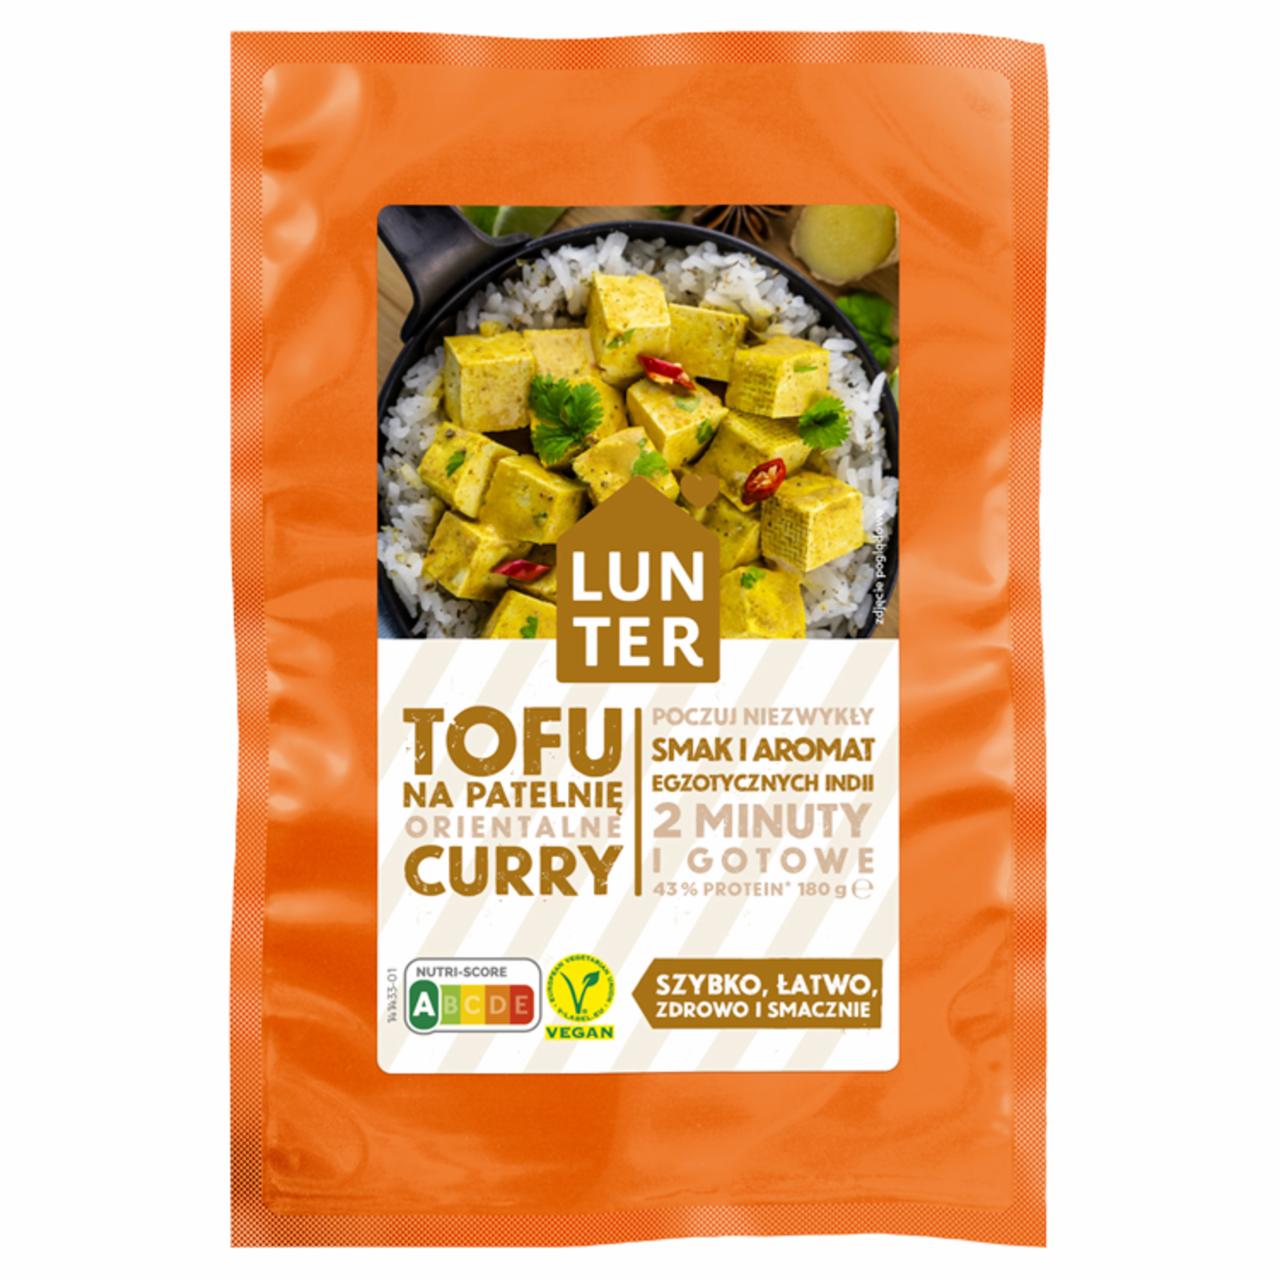 Zdjęcia - Lunter Tofu na patelnię curry 180 g